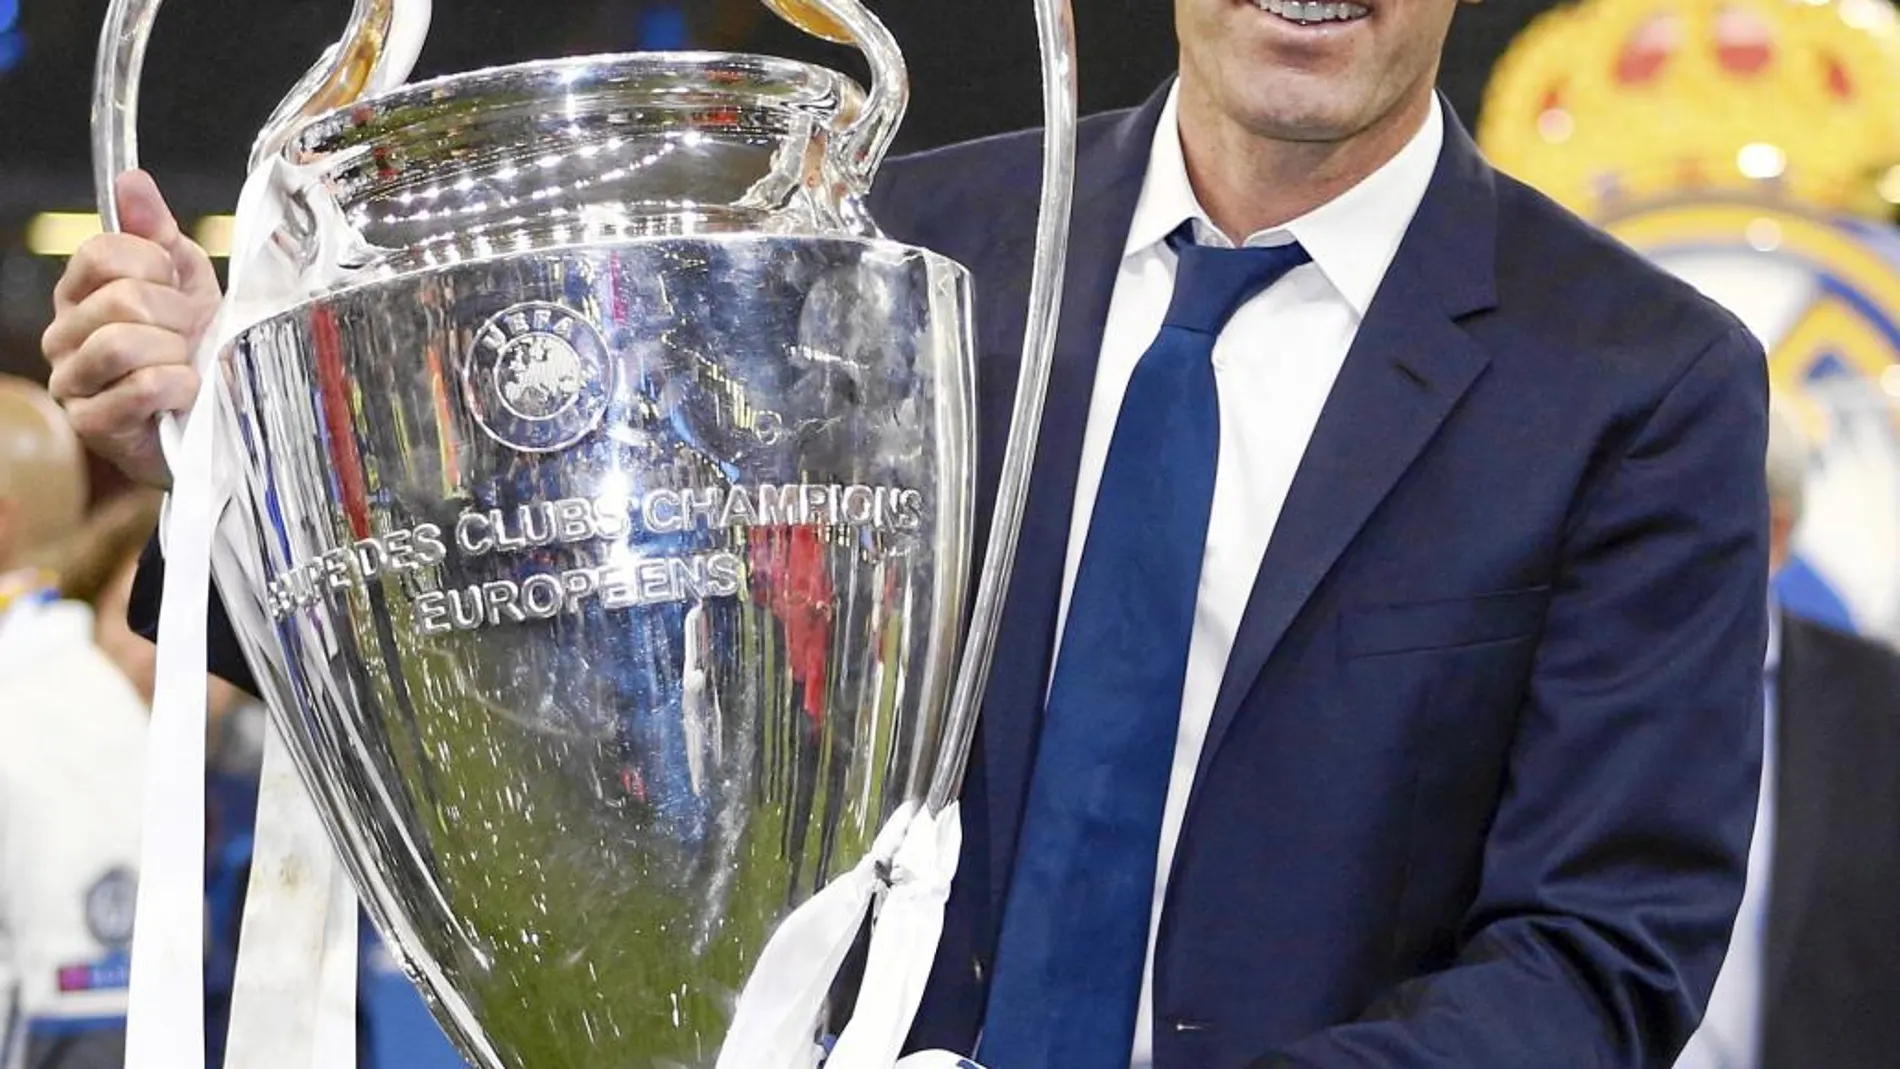 Cara a cara: ¿Es Zidane el mejor entrenador del mundo?